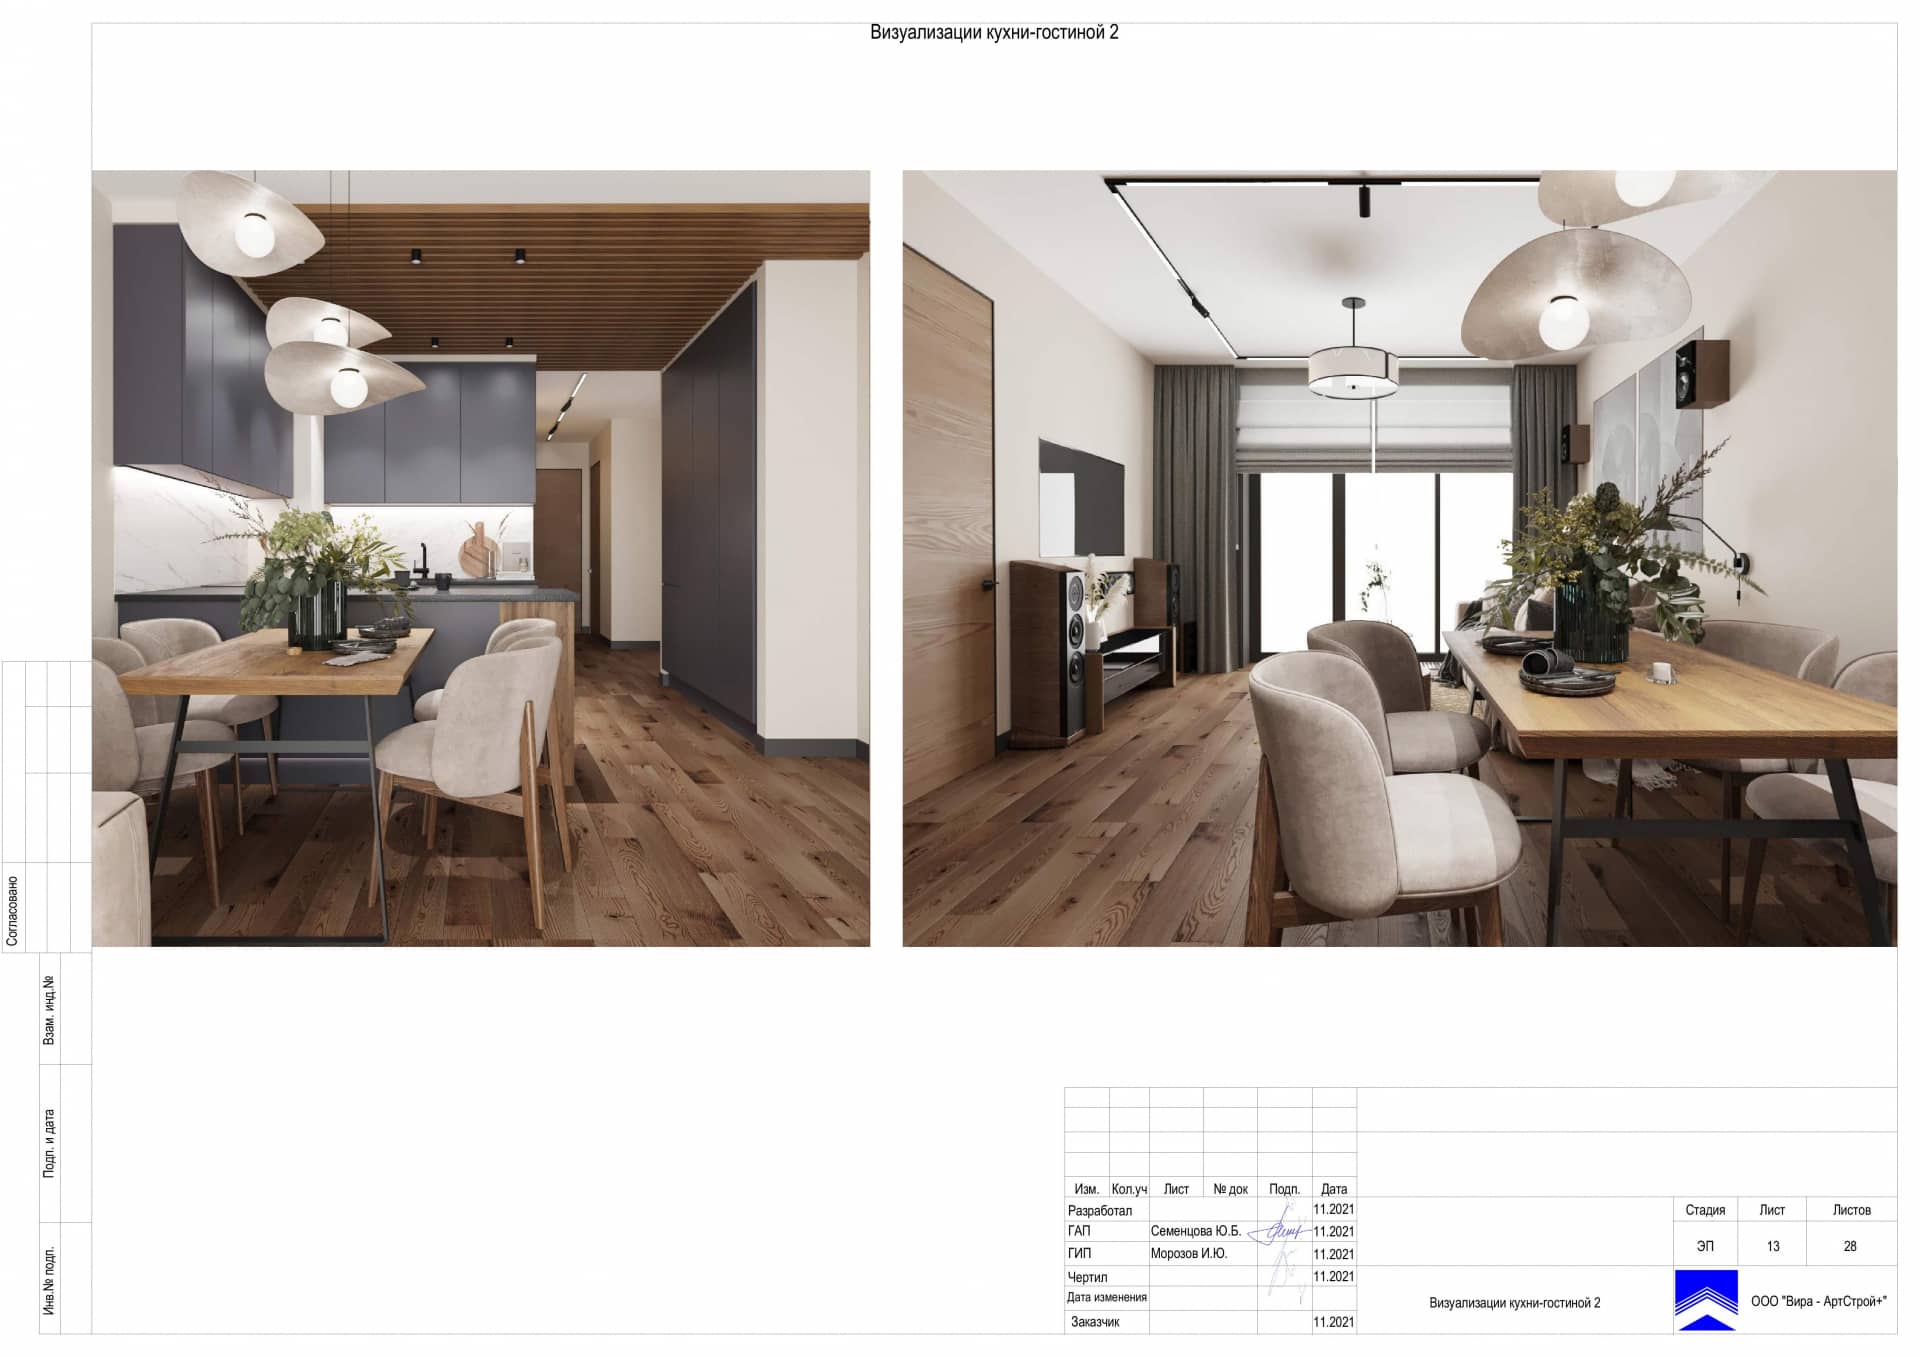 Визуализация кухни гостиной 2, квартира 100 м² в ЖК «Джаз»